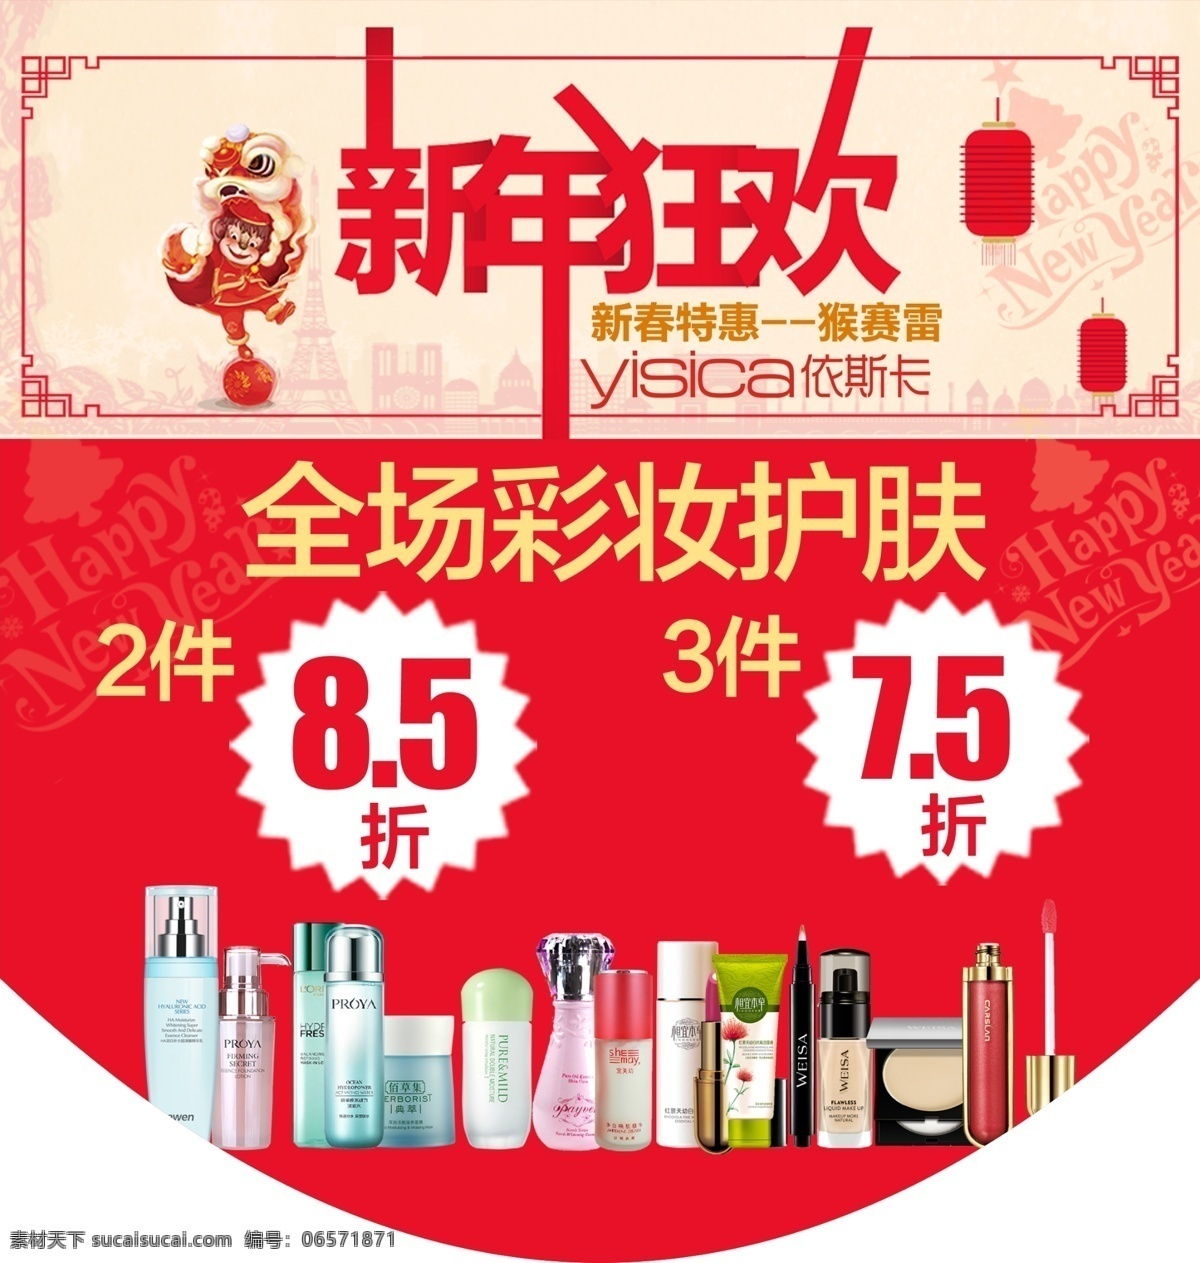 化妆品 美容护肤 海报新年活动 海报 新年活动 节日促销 红色背景 底图 源文件